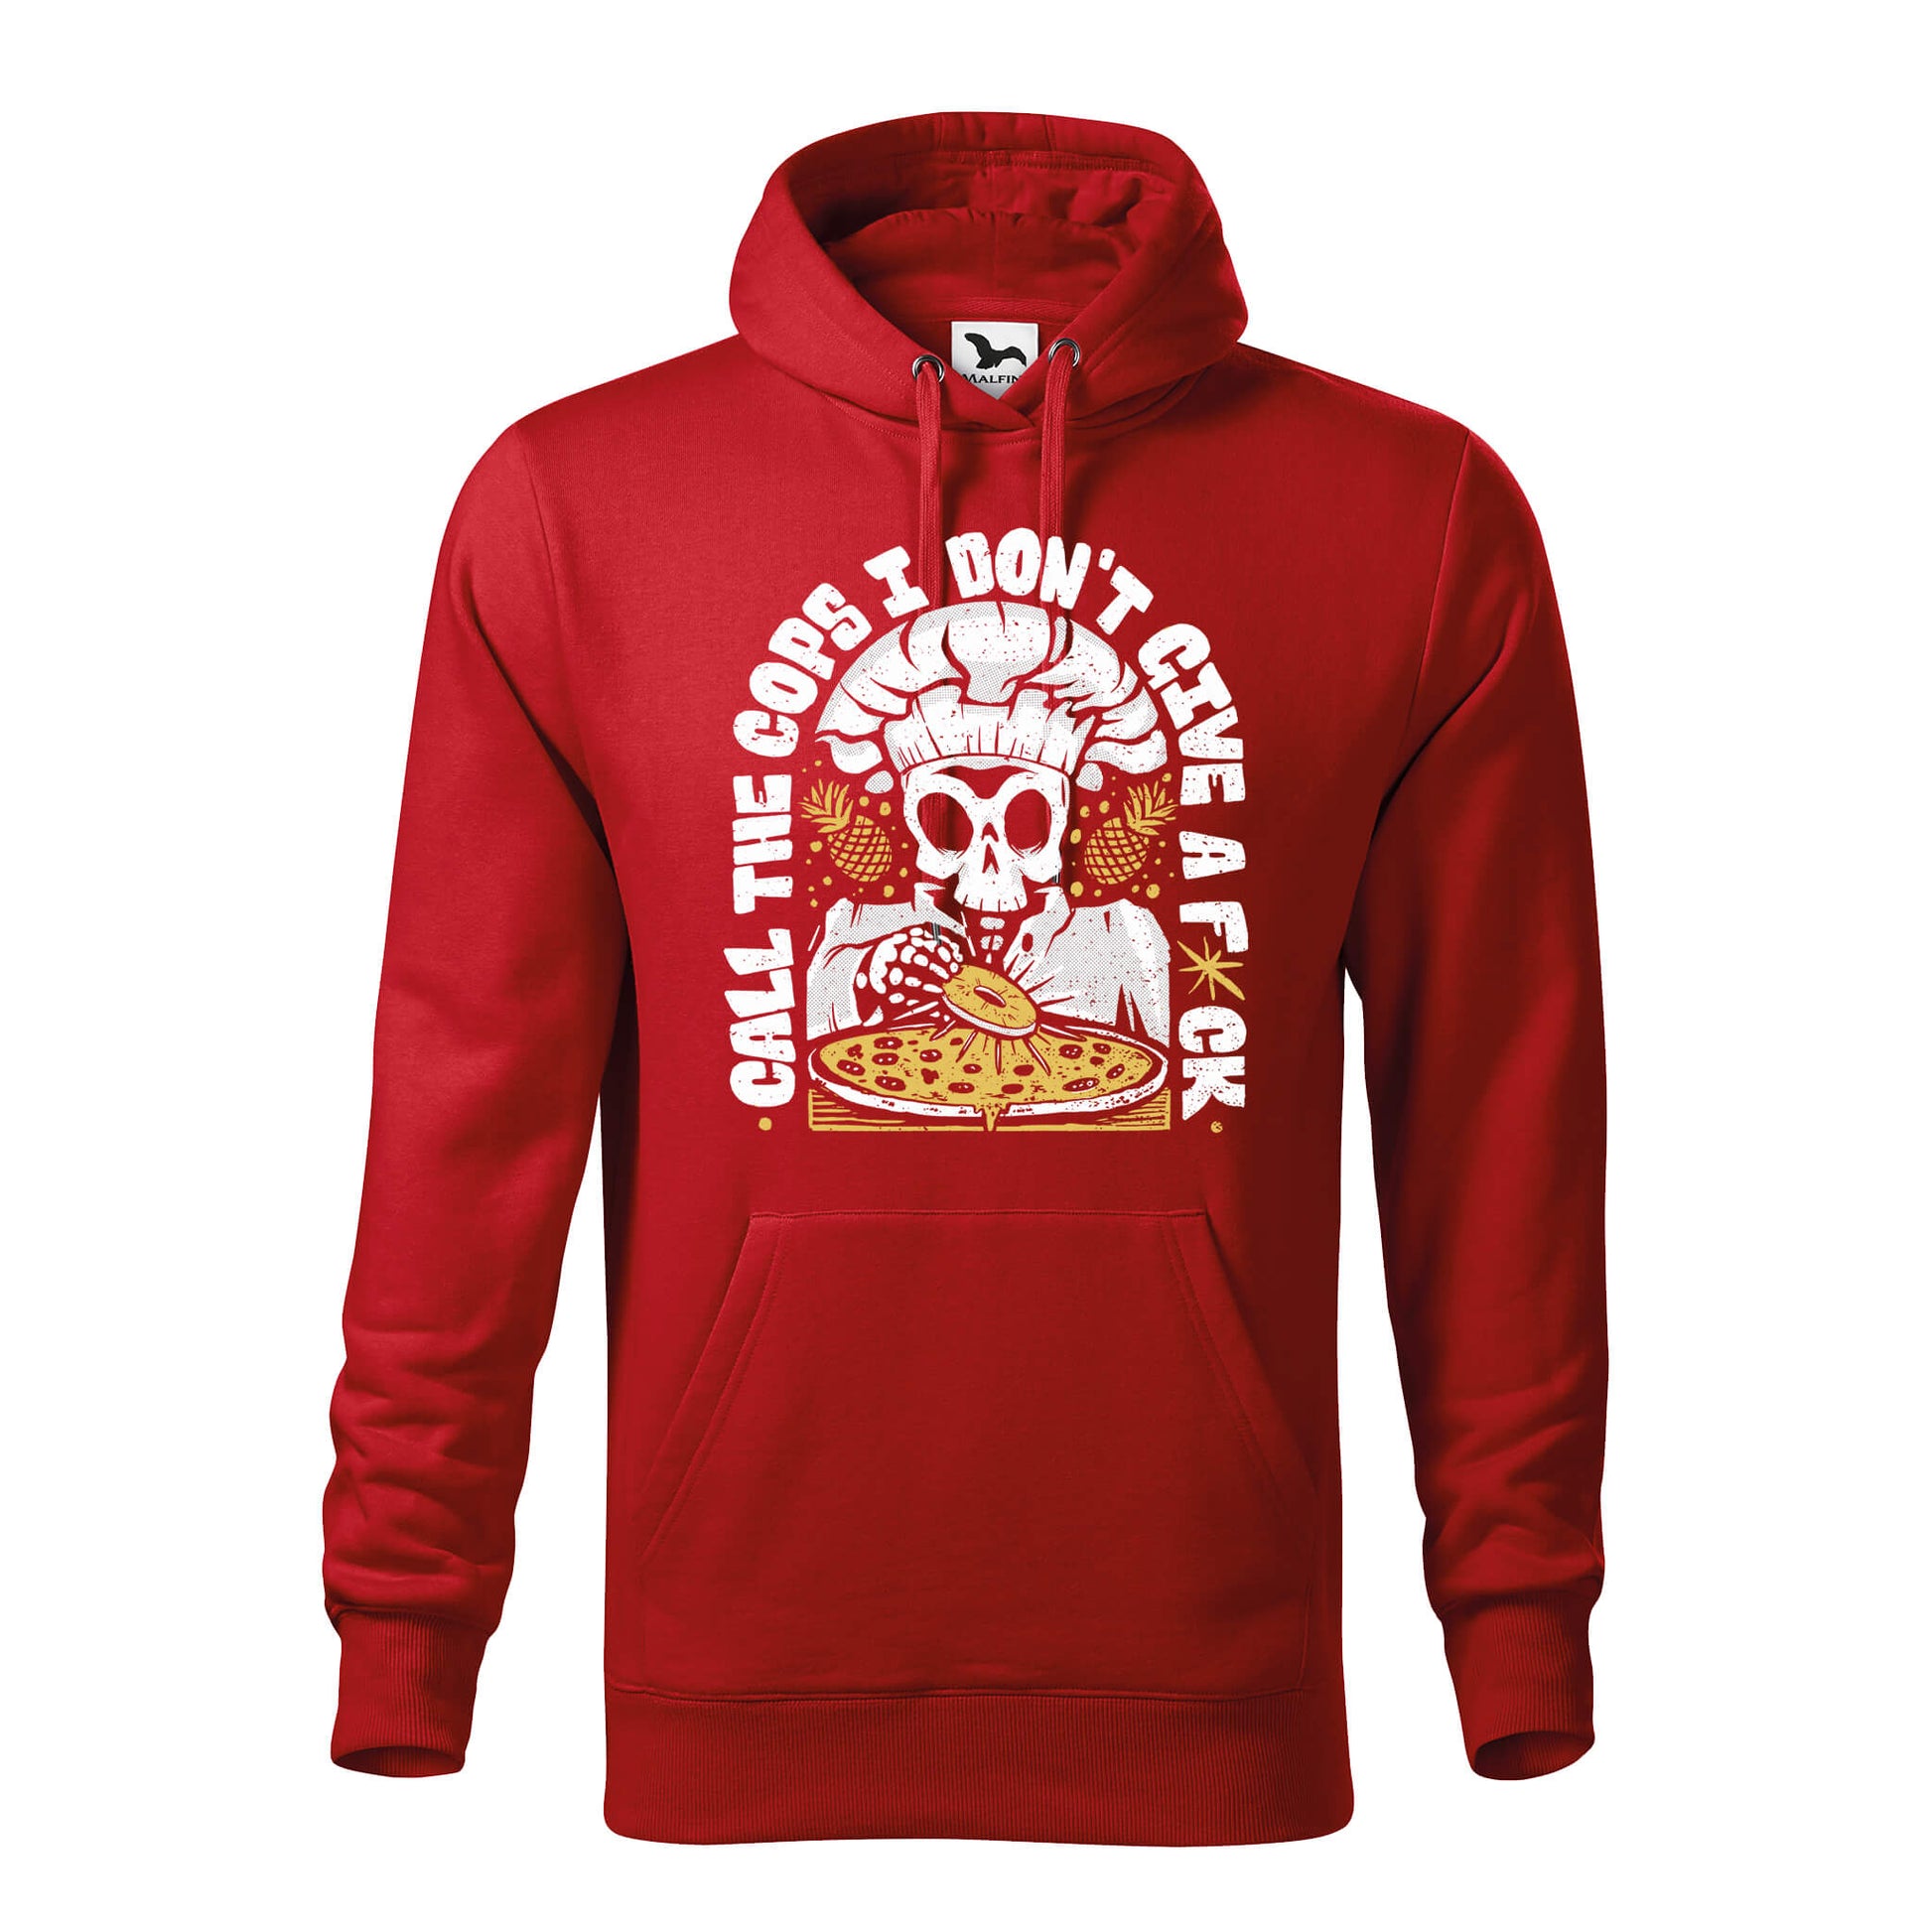 Pineapple pizza idgaf hoodie - rvdesignprint